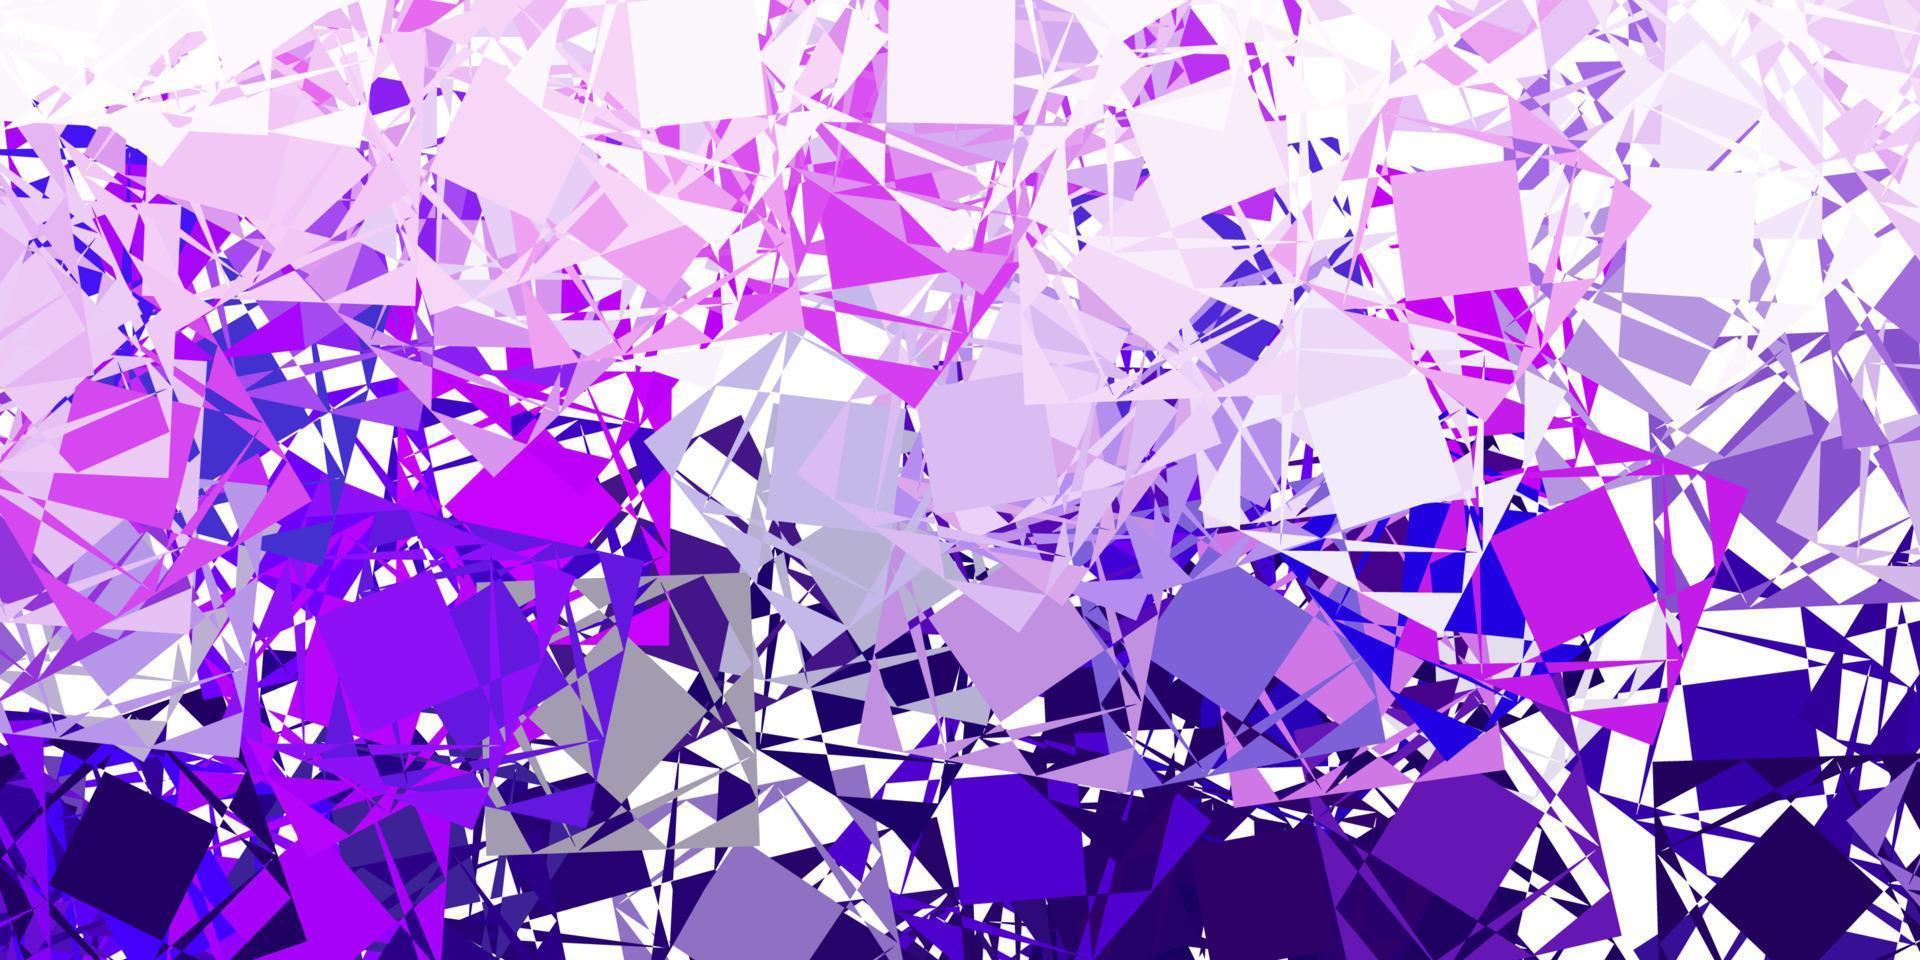 fond de vecteur violet clair avec des triangles.